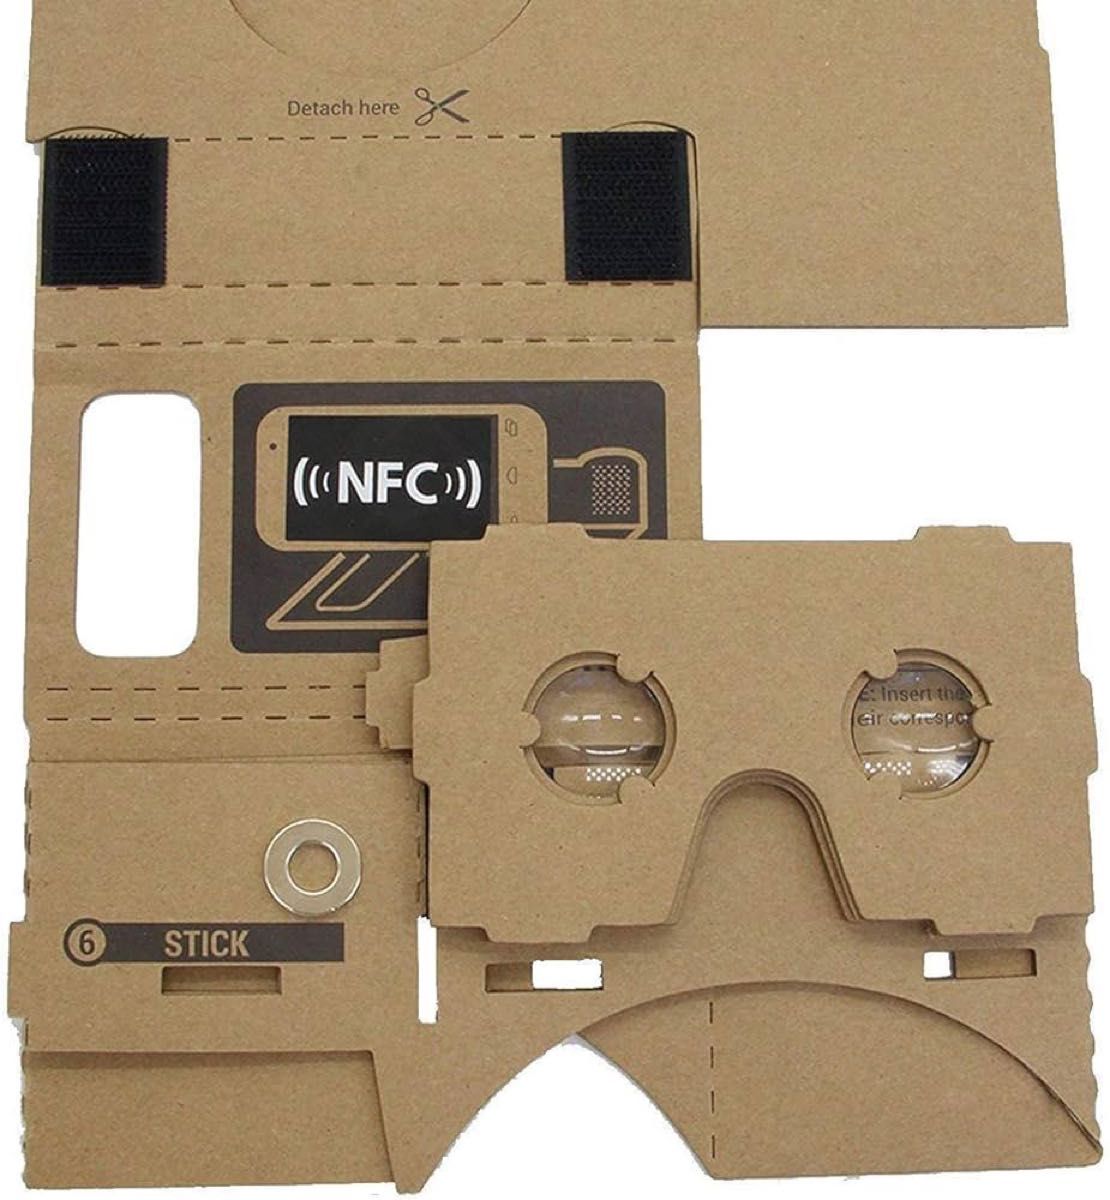 ★人気★Google Cardboard 2パック VRヘッドセット 3Dバーチャルリアリティメガネボックス クリア3D光学レンズ